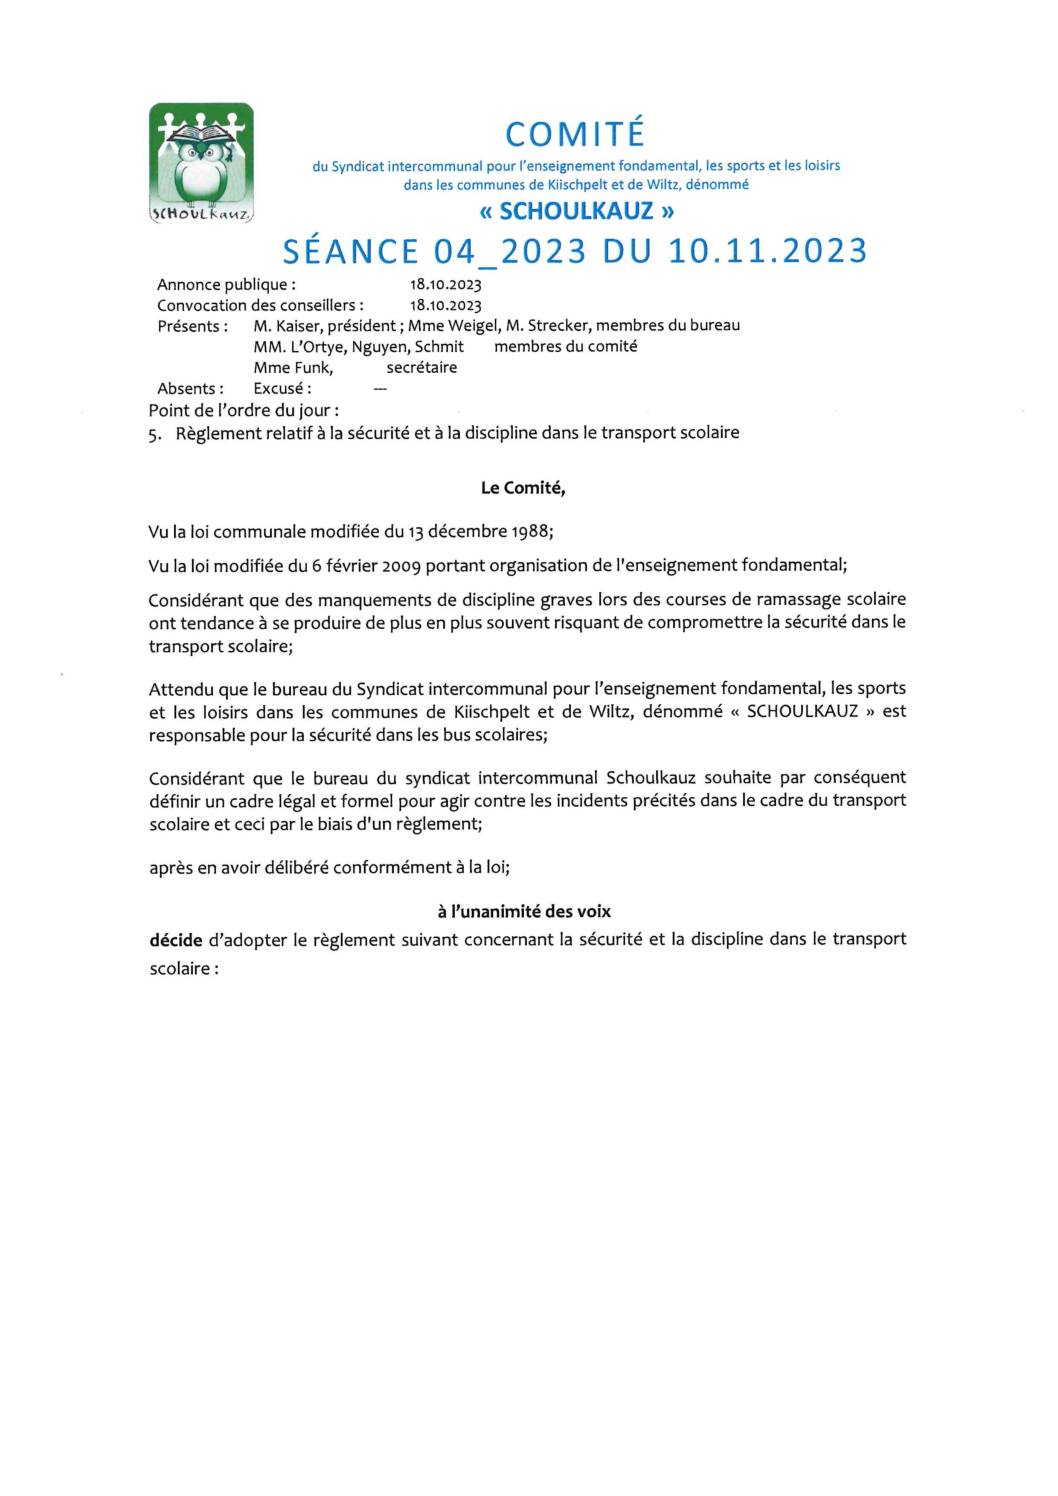 Comité Schoulkauz - Séance 04_2023 du 10.11.2023 - Règlement relatif à la sécurité transport public